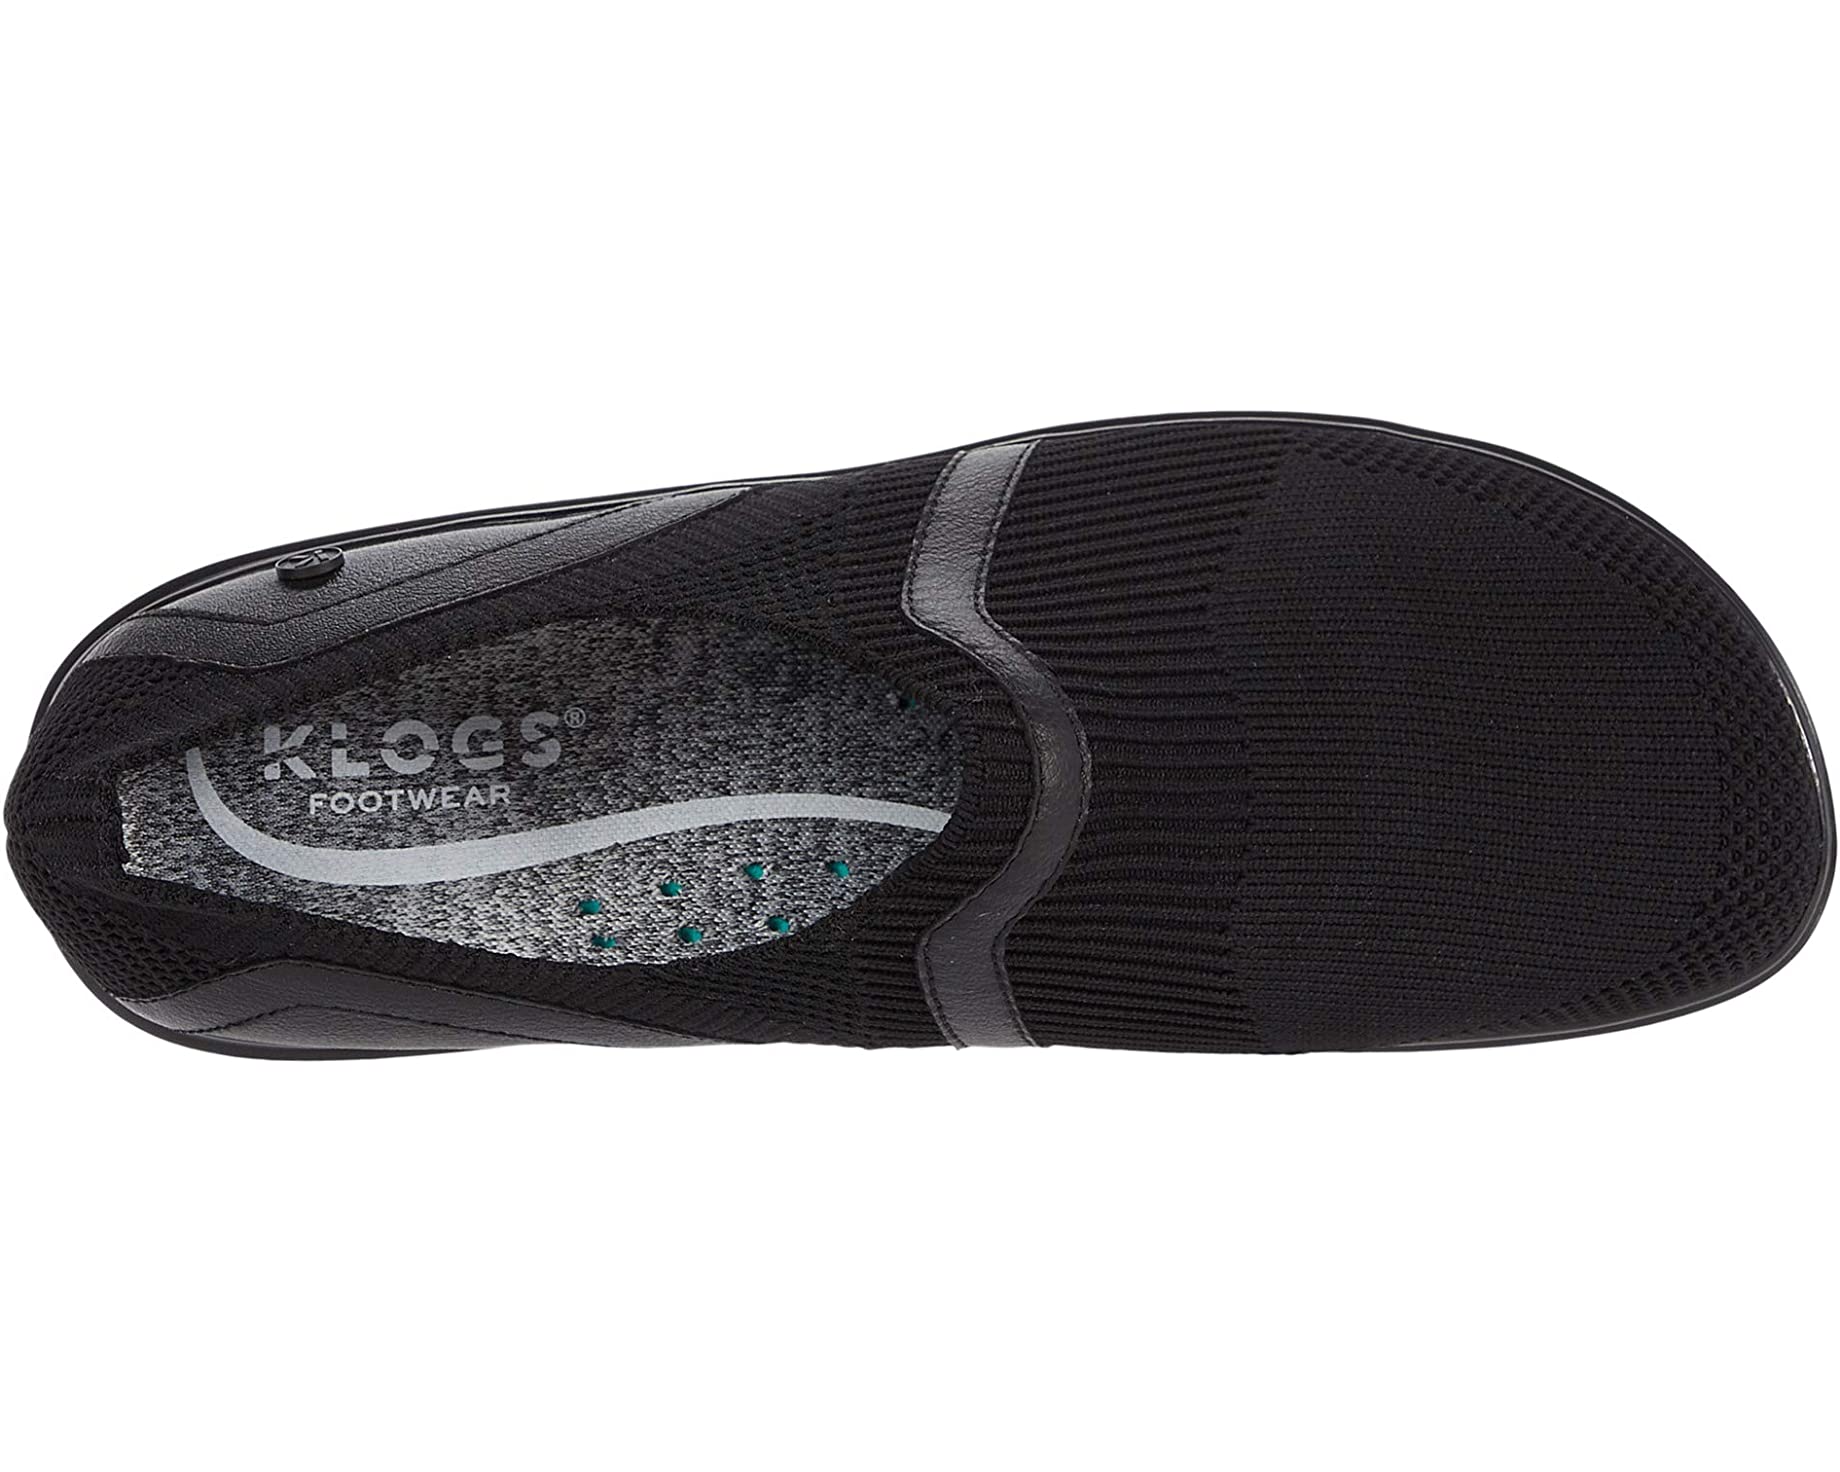 Кроссовки Evolve Klogs Footwear, черный кроссовки klogs footwear evolve черный белый